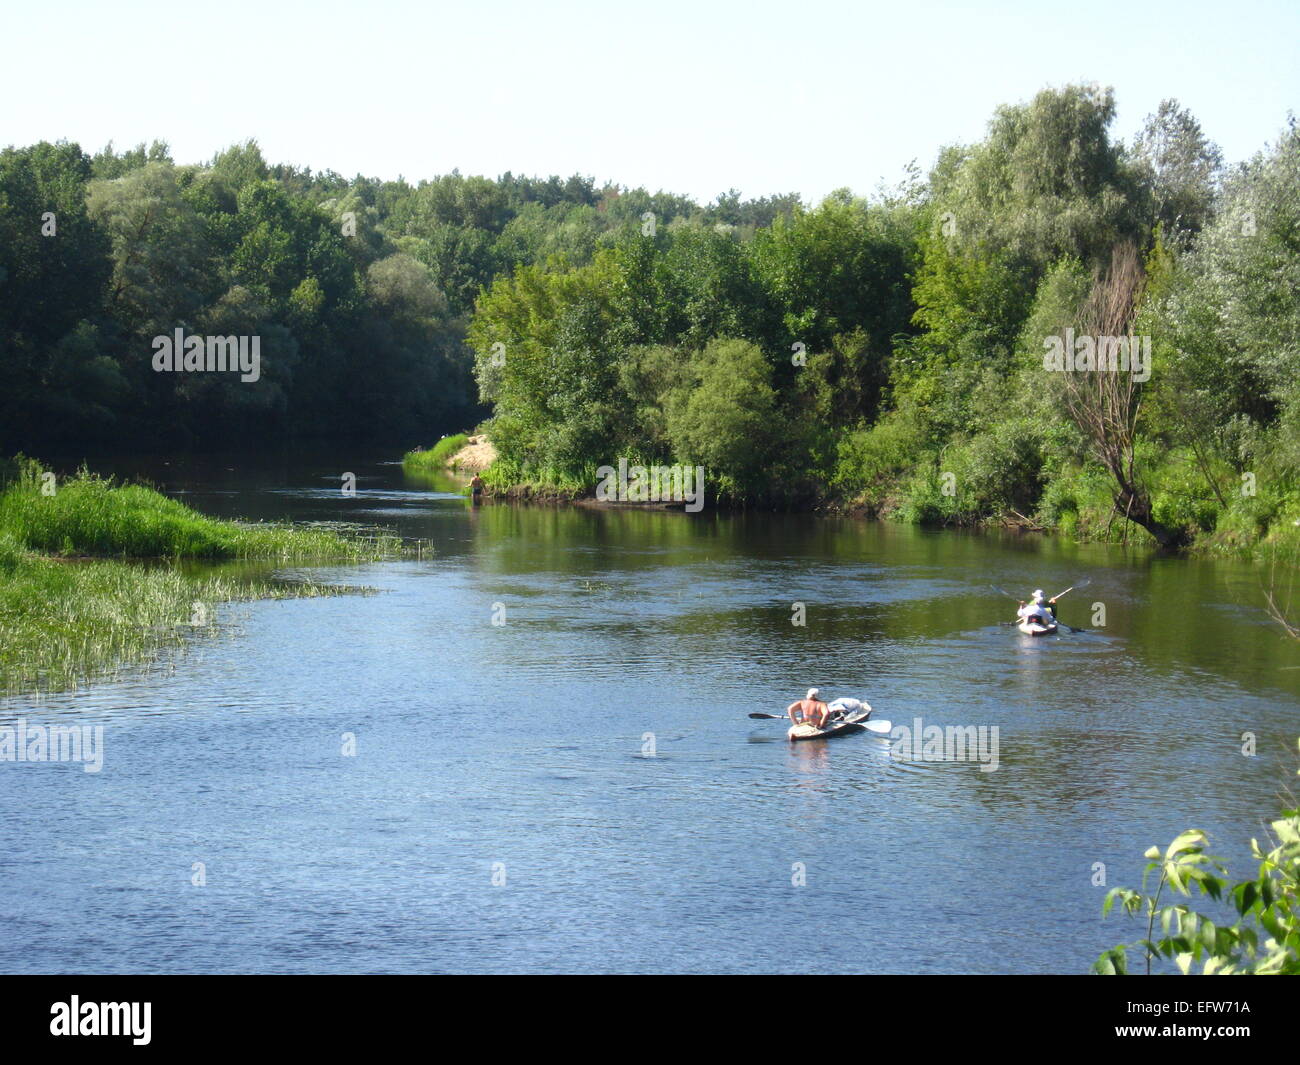 Bellissimo paesaggio con fiume e canoa con persone su di esso Foto Stock